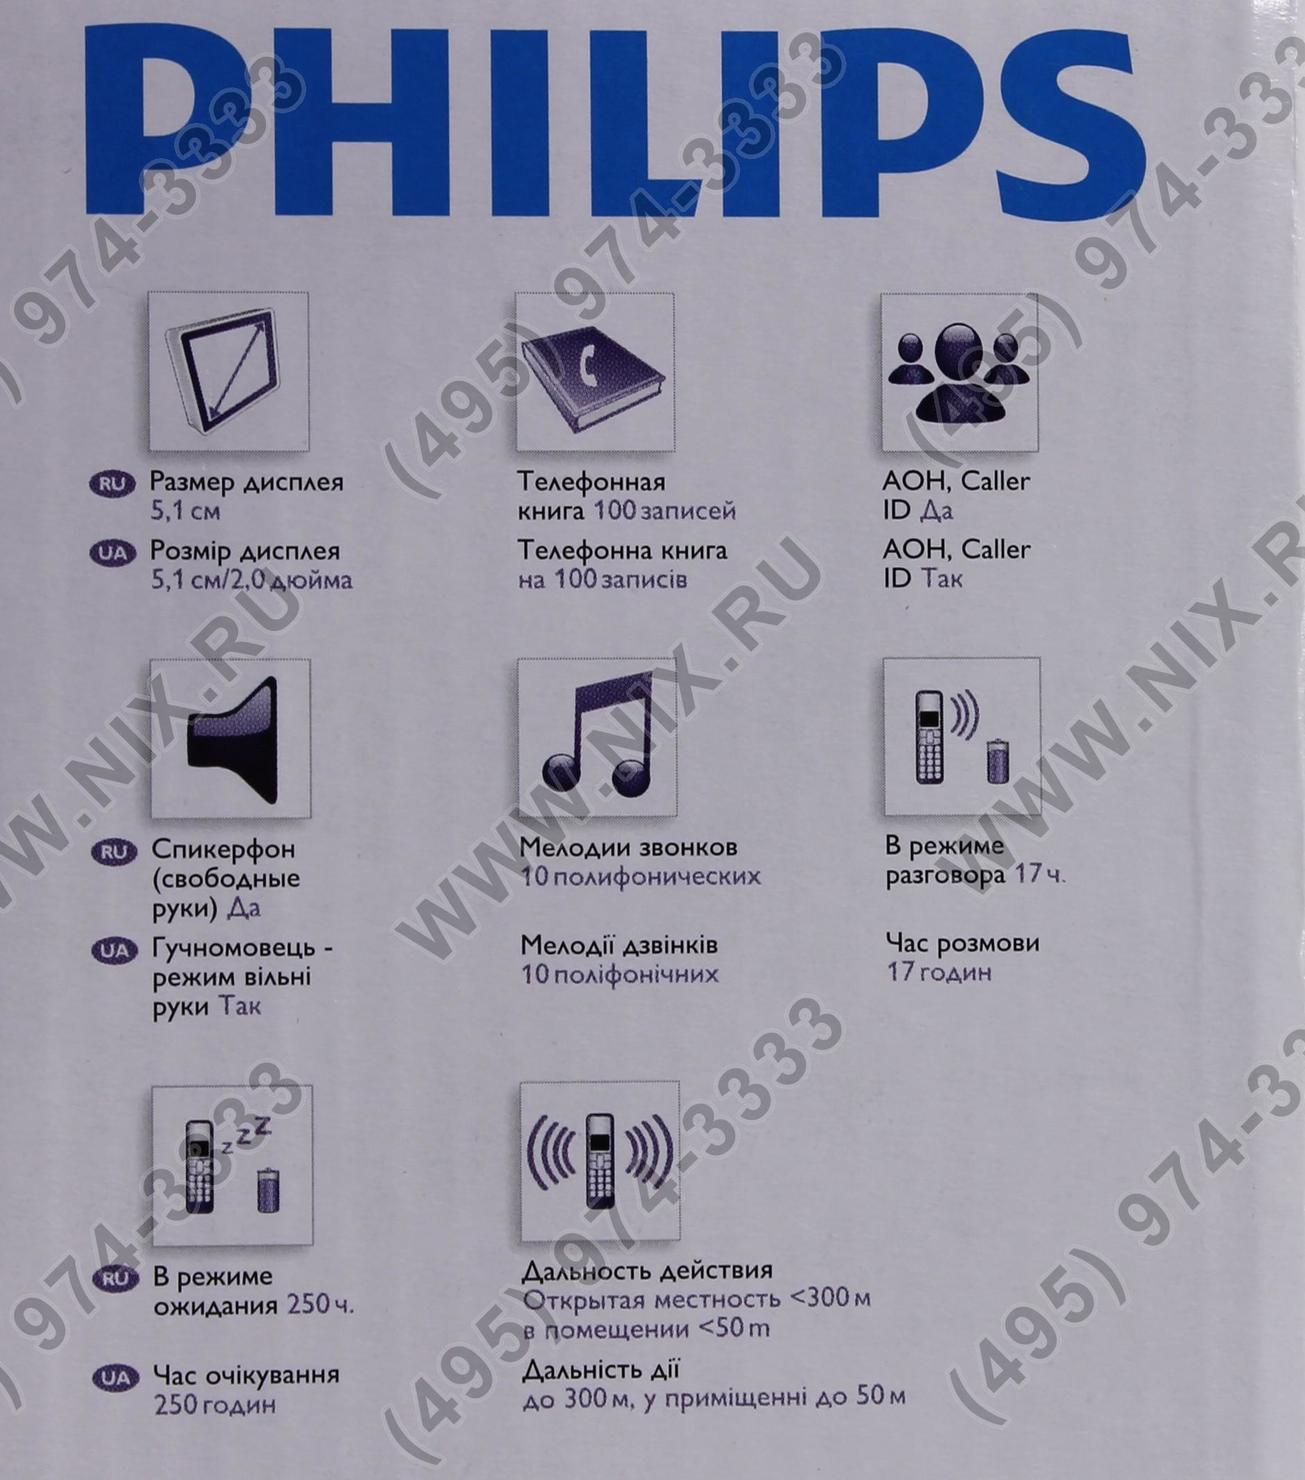 Что значит филипс. Philips Xenium значки на дисплее. Кнопочный телефон Philips Xenium значки на экране. Значки на экране телефона Philips кнопочный. Значки на телефоне Филипс кнопочный.